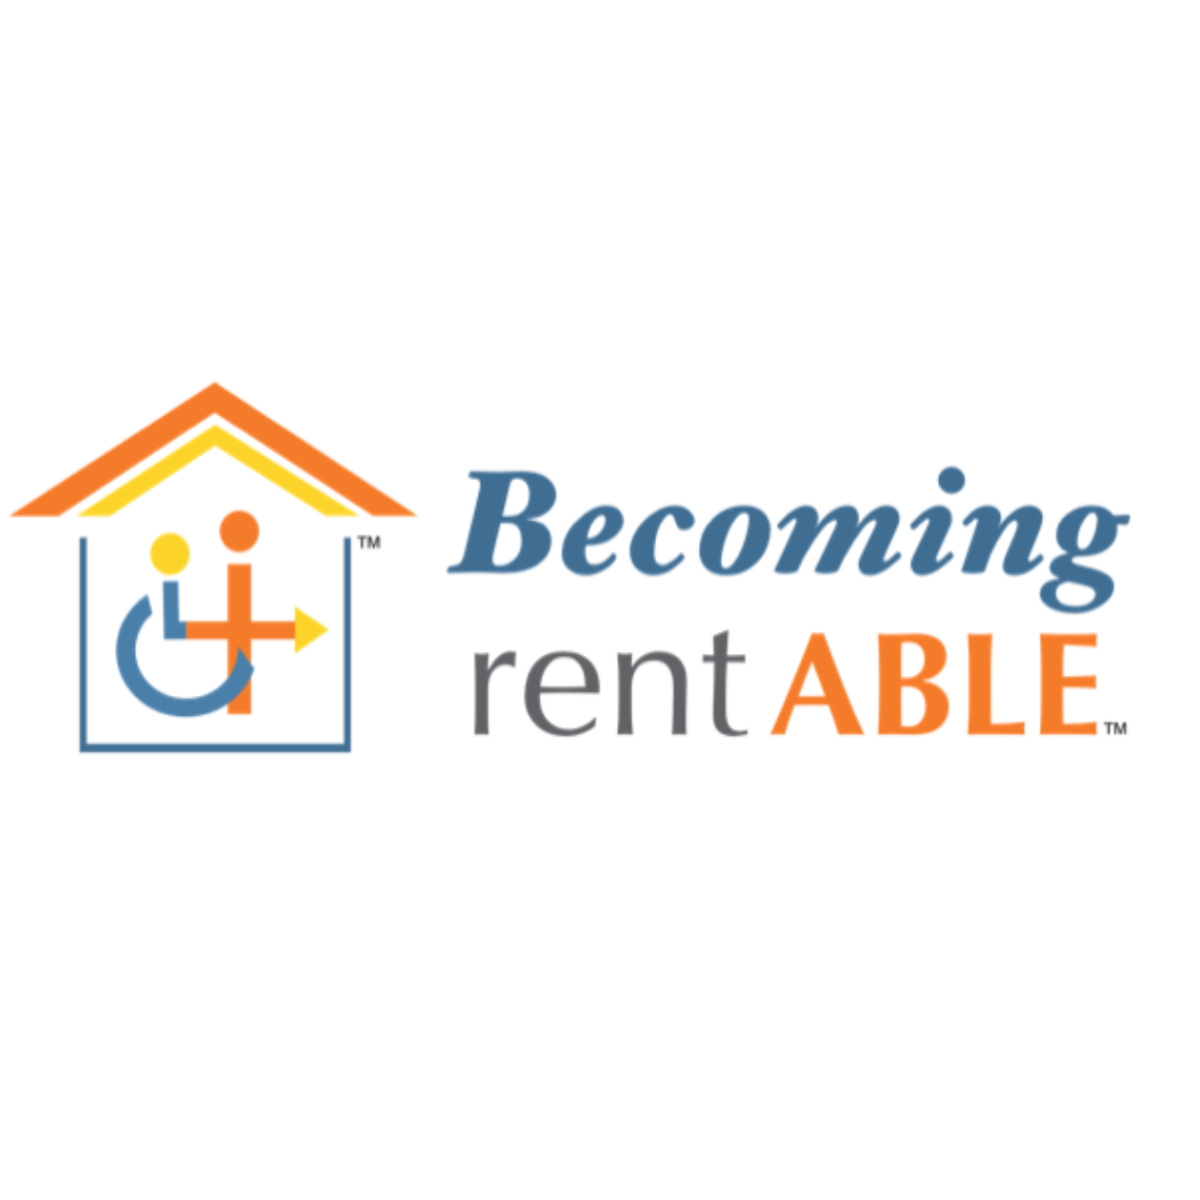 Becoming rentAble logo